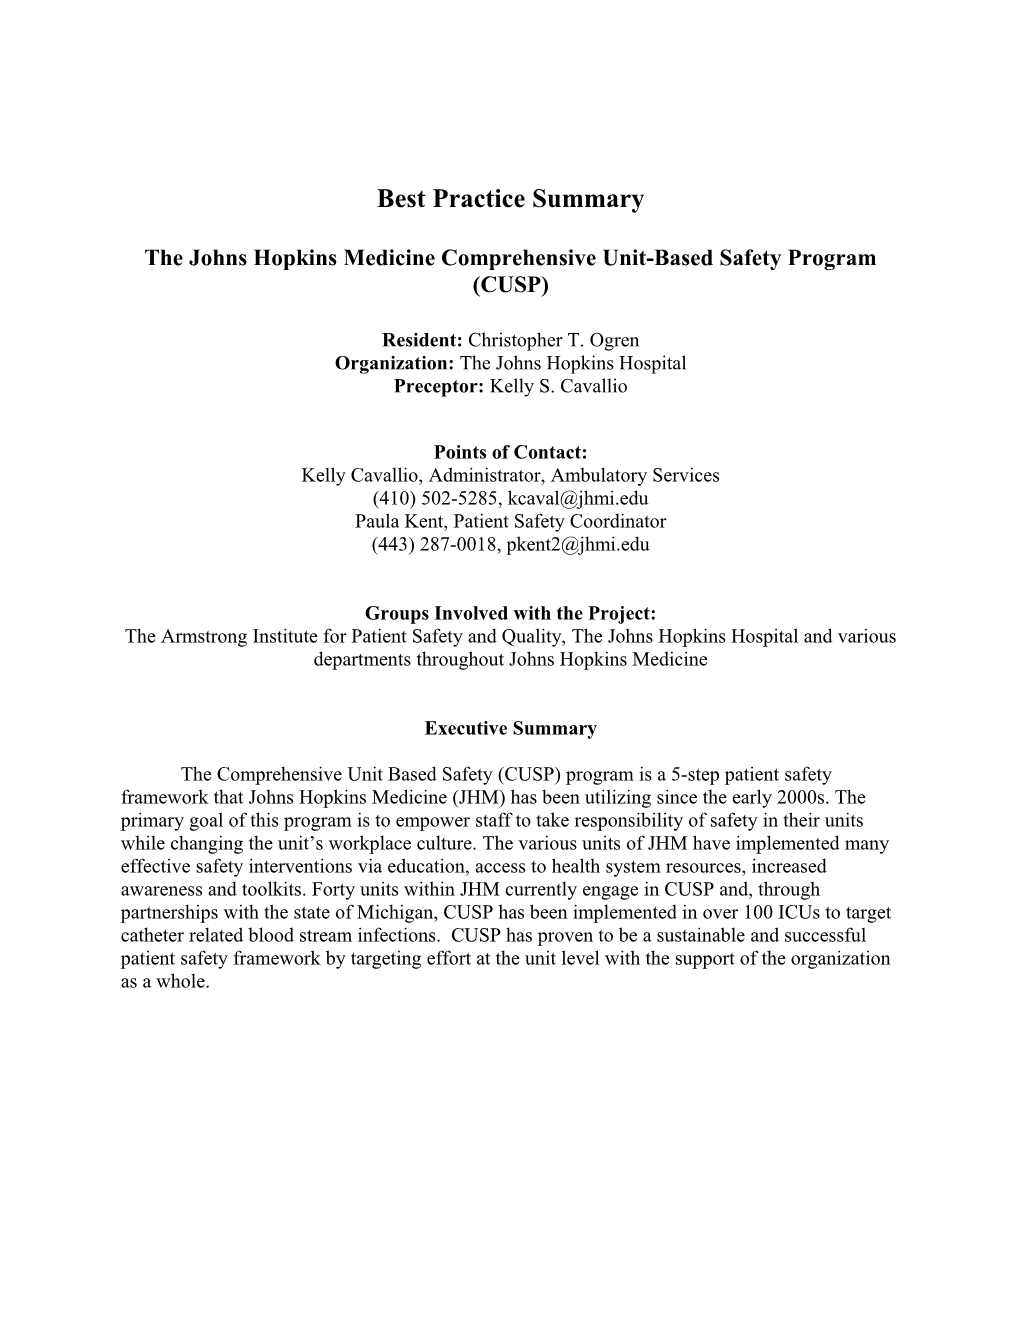 The Johns Hopkins Medicine Comprehensive Unit-Based Safety Program (CUSP)